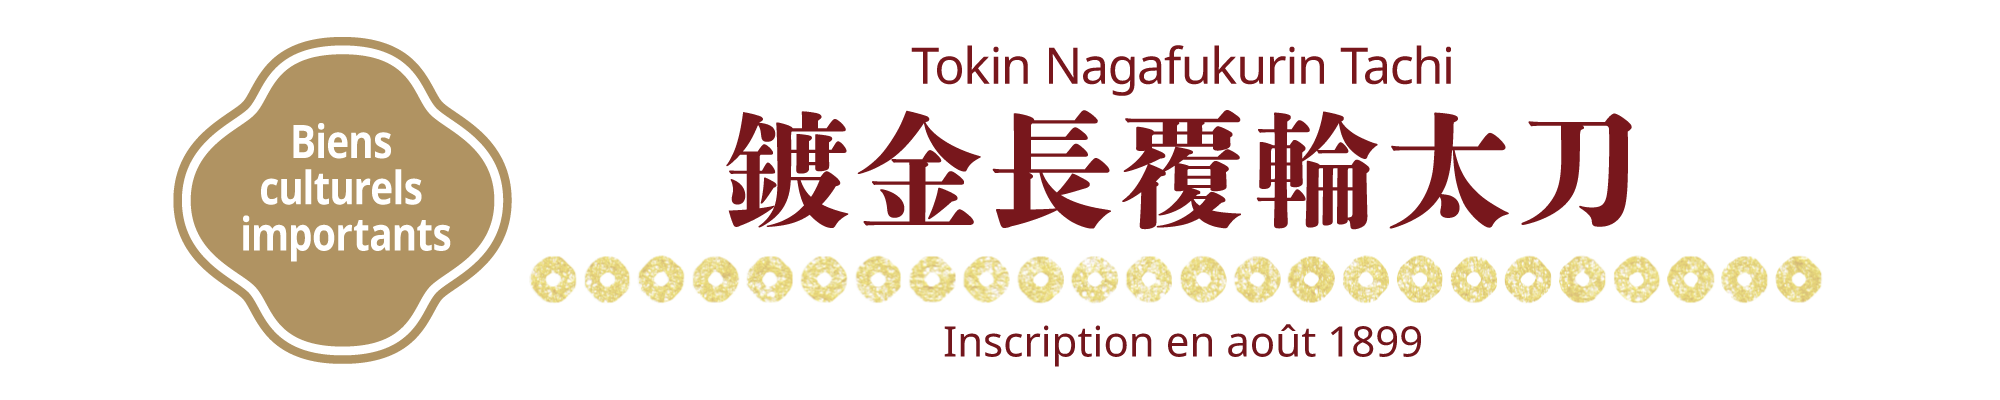 [Biens culturels importants]Tokin Nagafukurin Tachi, Inscription en août 1899